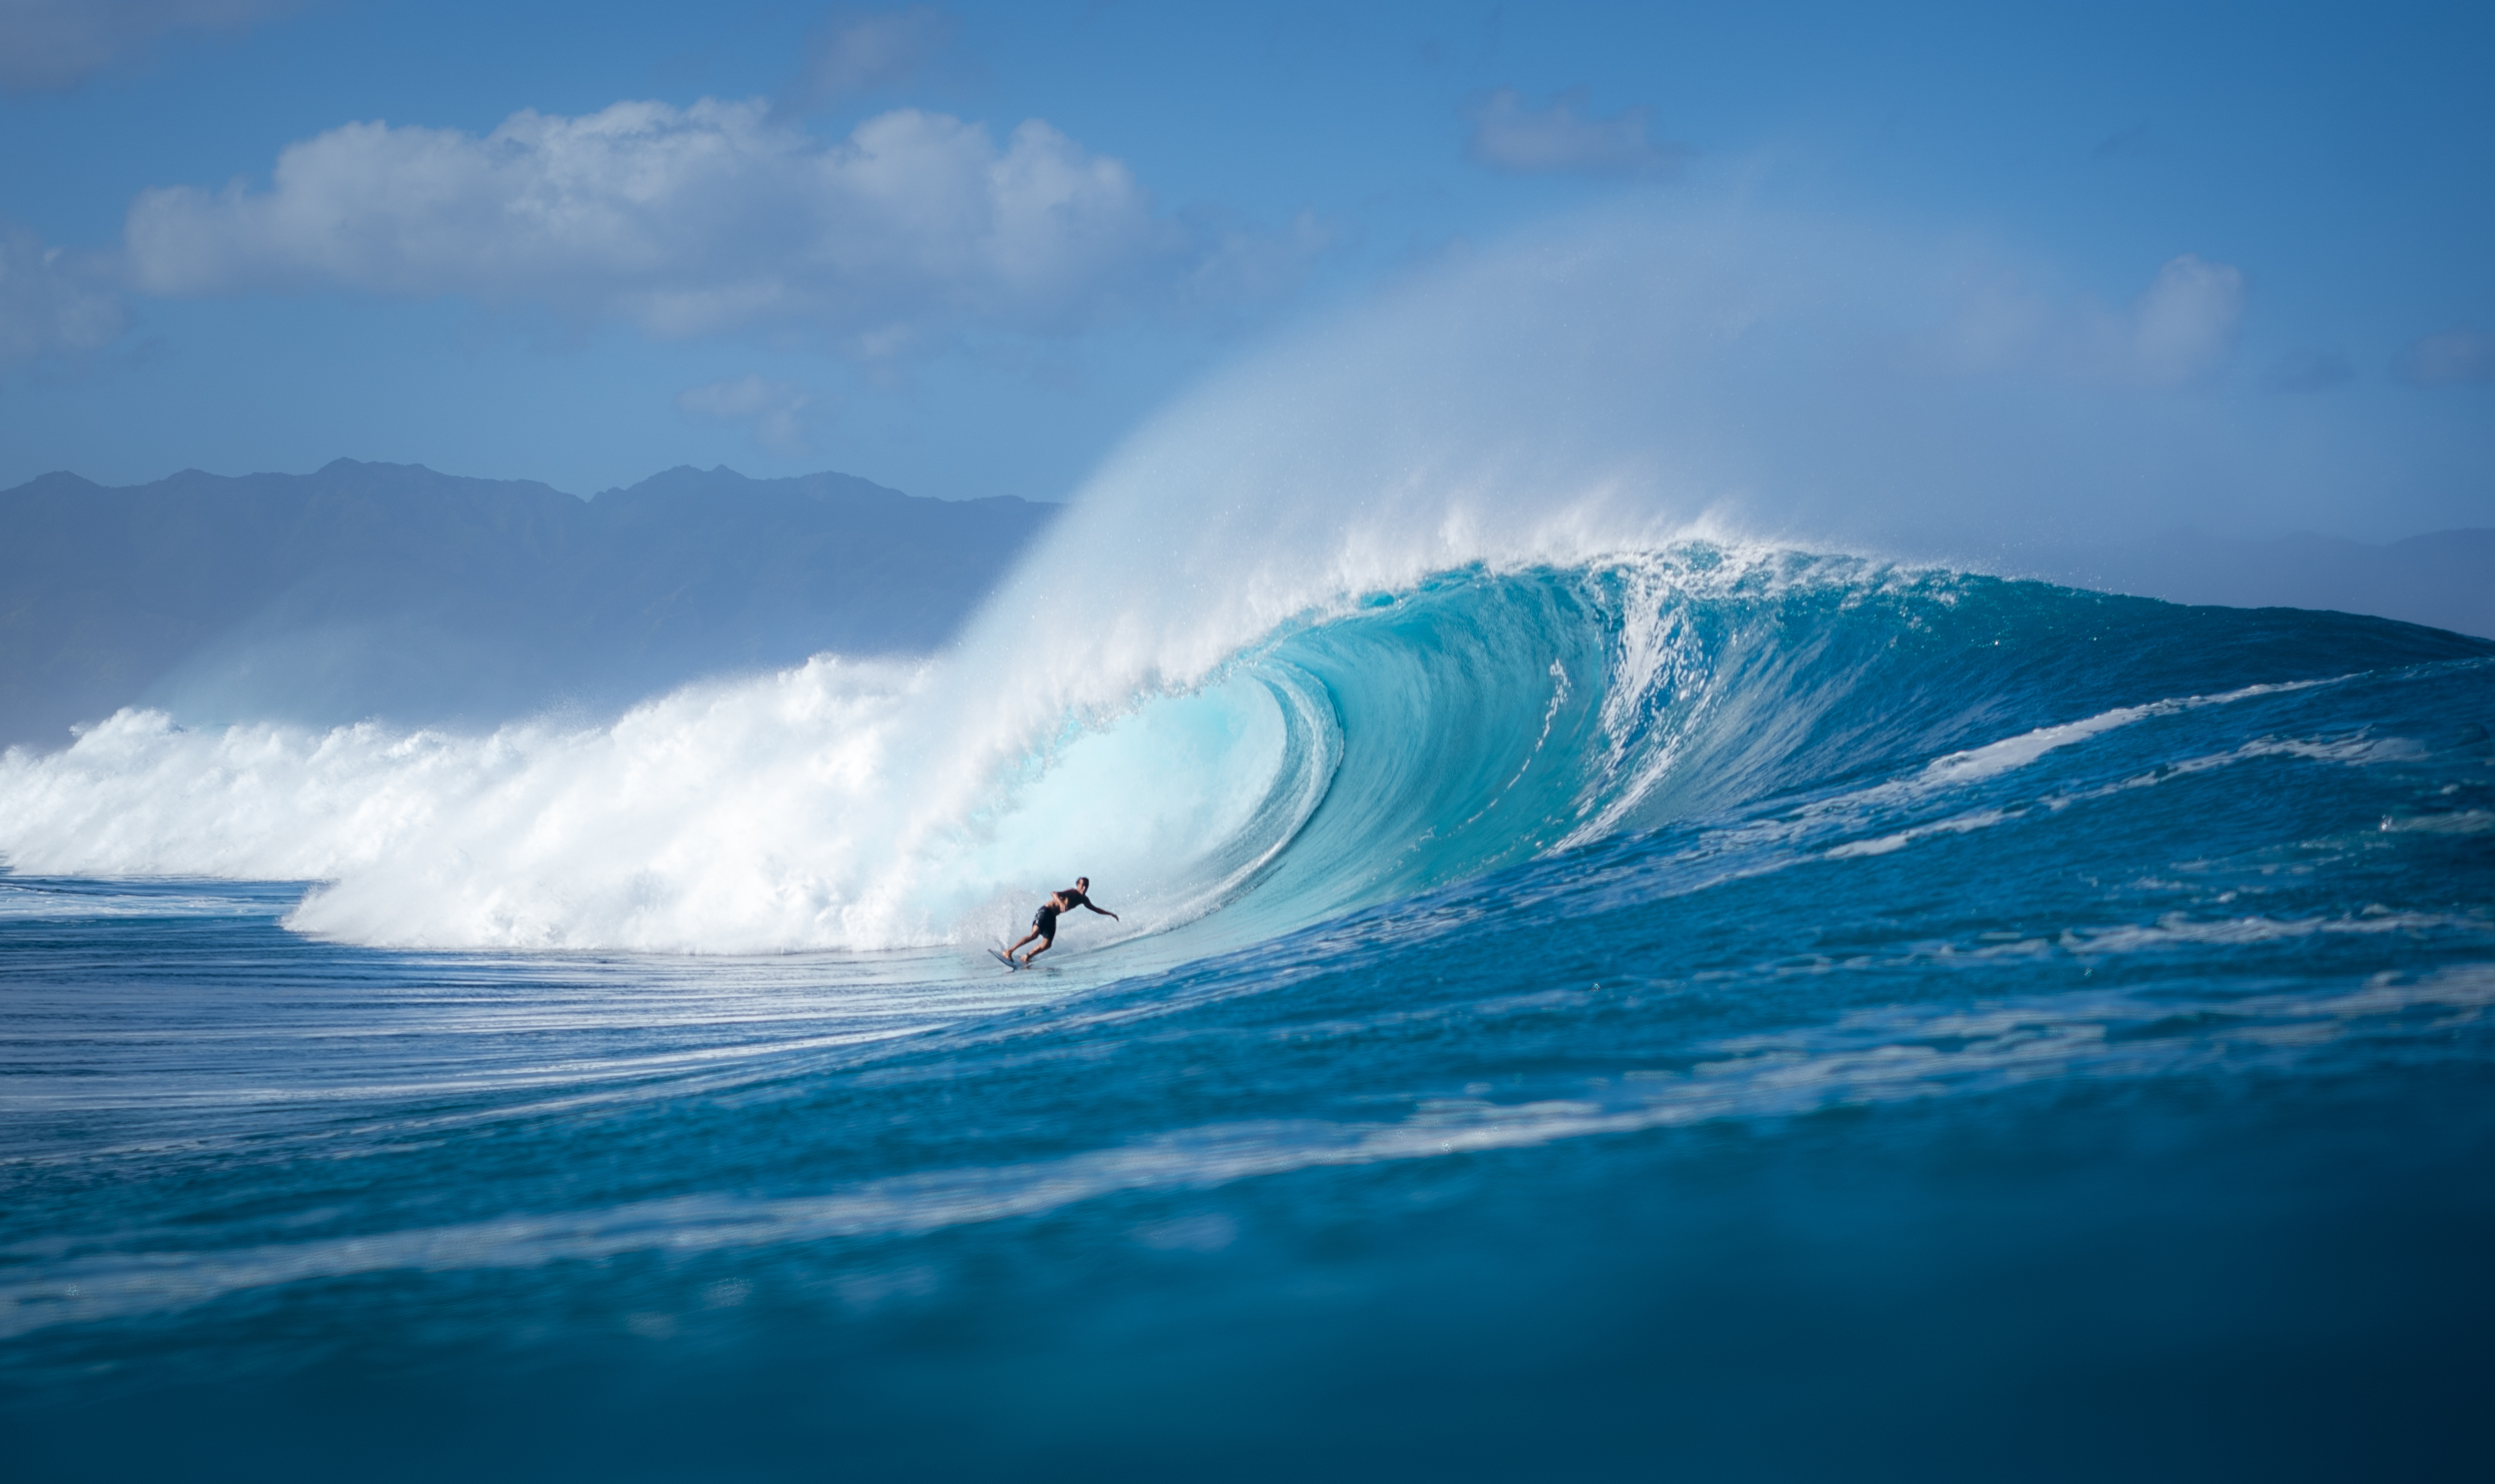 Une ONG rassemblant des surfeurs se&nbsp;mobilise pour protéger des zones côtières où la biodiversité est étroitement liée aux&nbsp;vagues de haute qualité.&nbsp;© derek, Adobe Stock